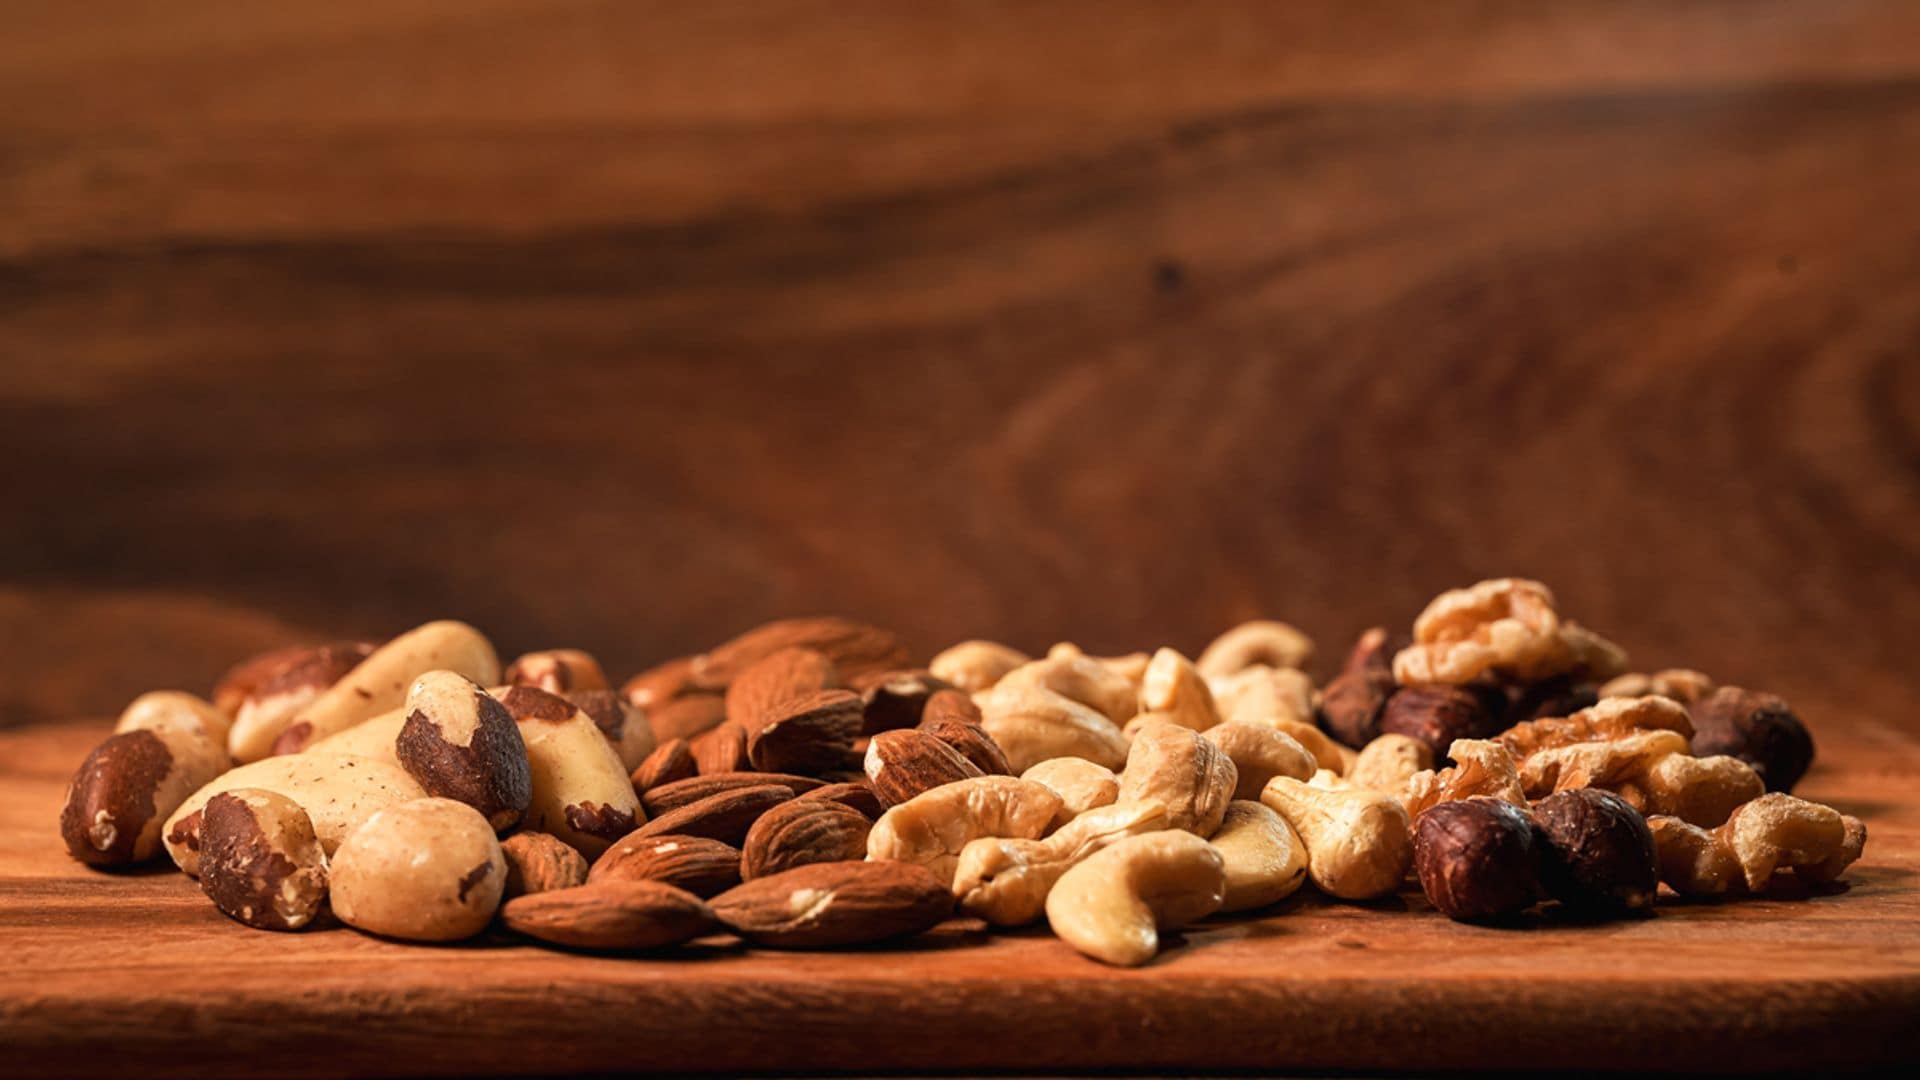 Descubre las variedades de nueces más populares y cómo usarlas en tus recetas